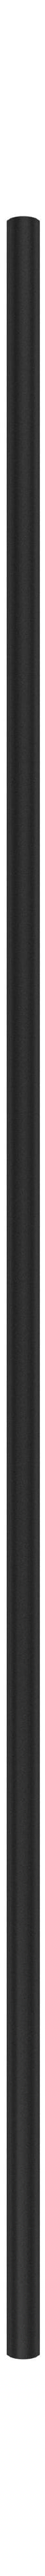 Moebe -Regalsystem/Wandregalbein 115 cm, schwarz